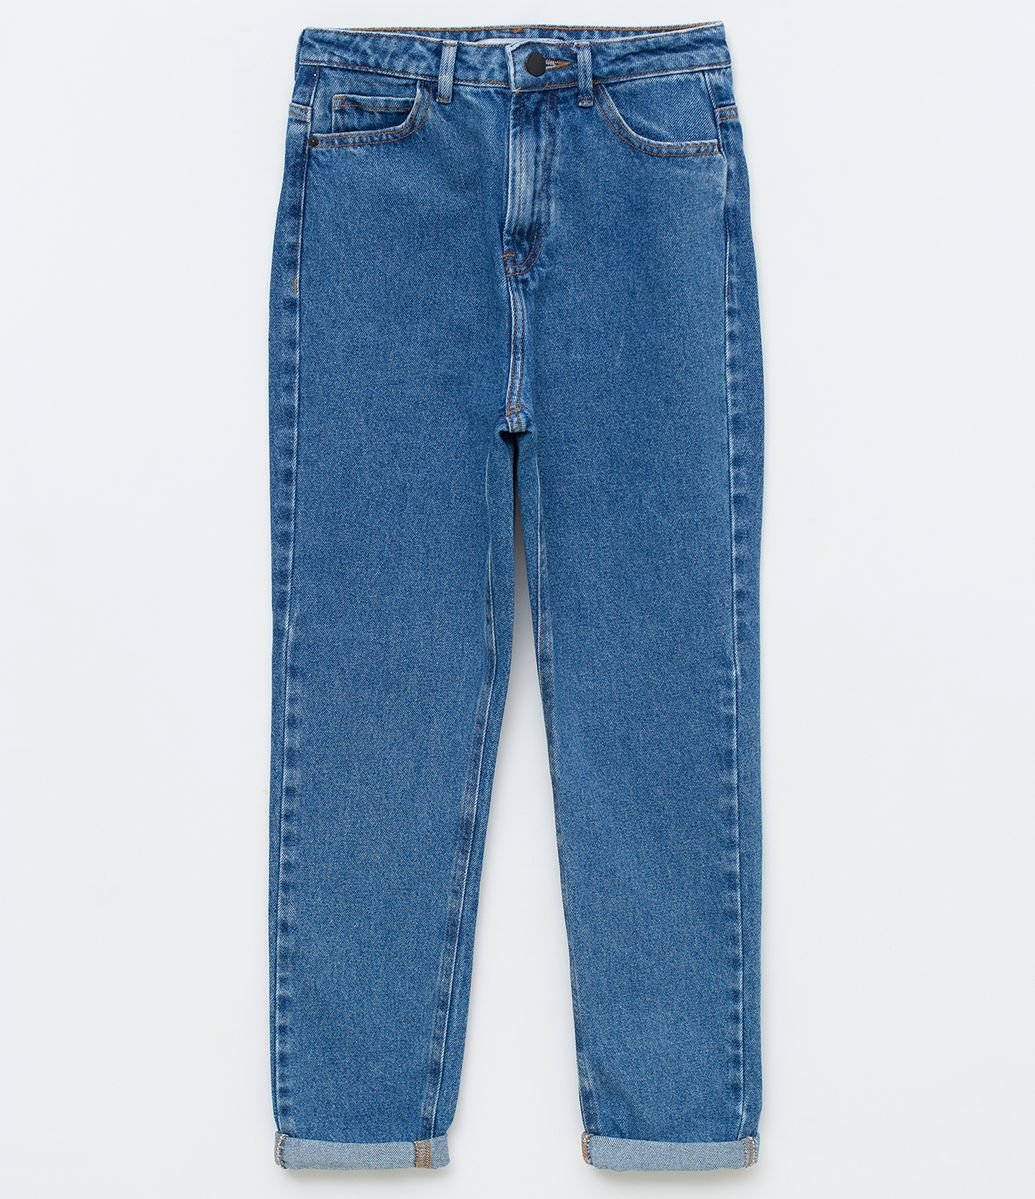 jeans 100 algodão cede